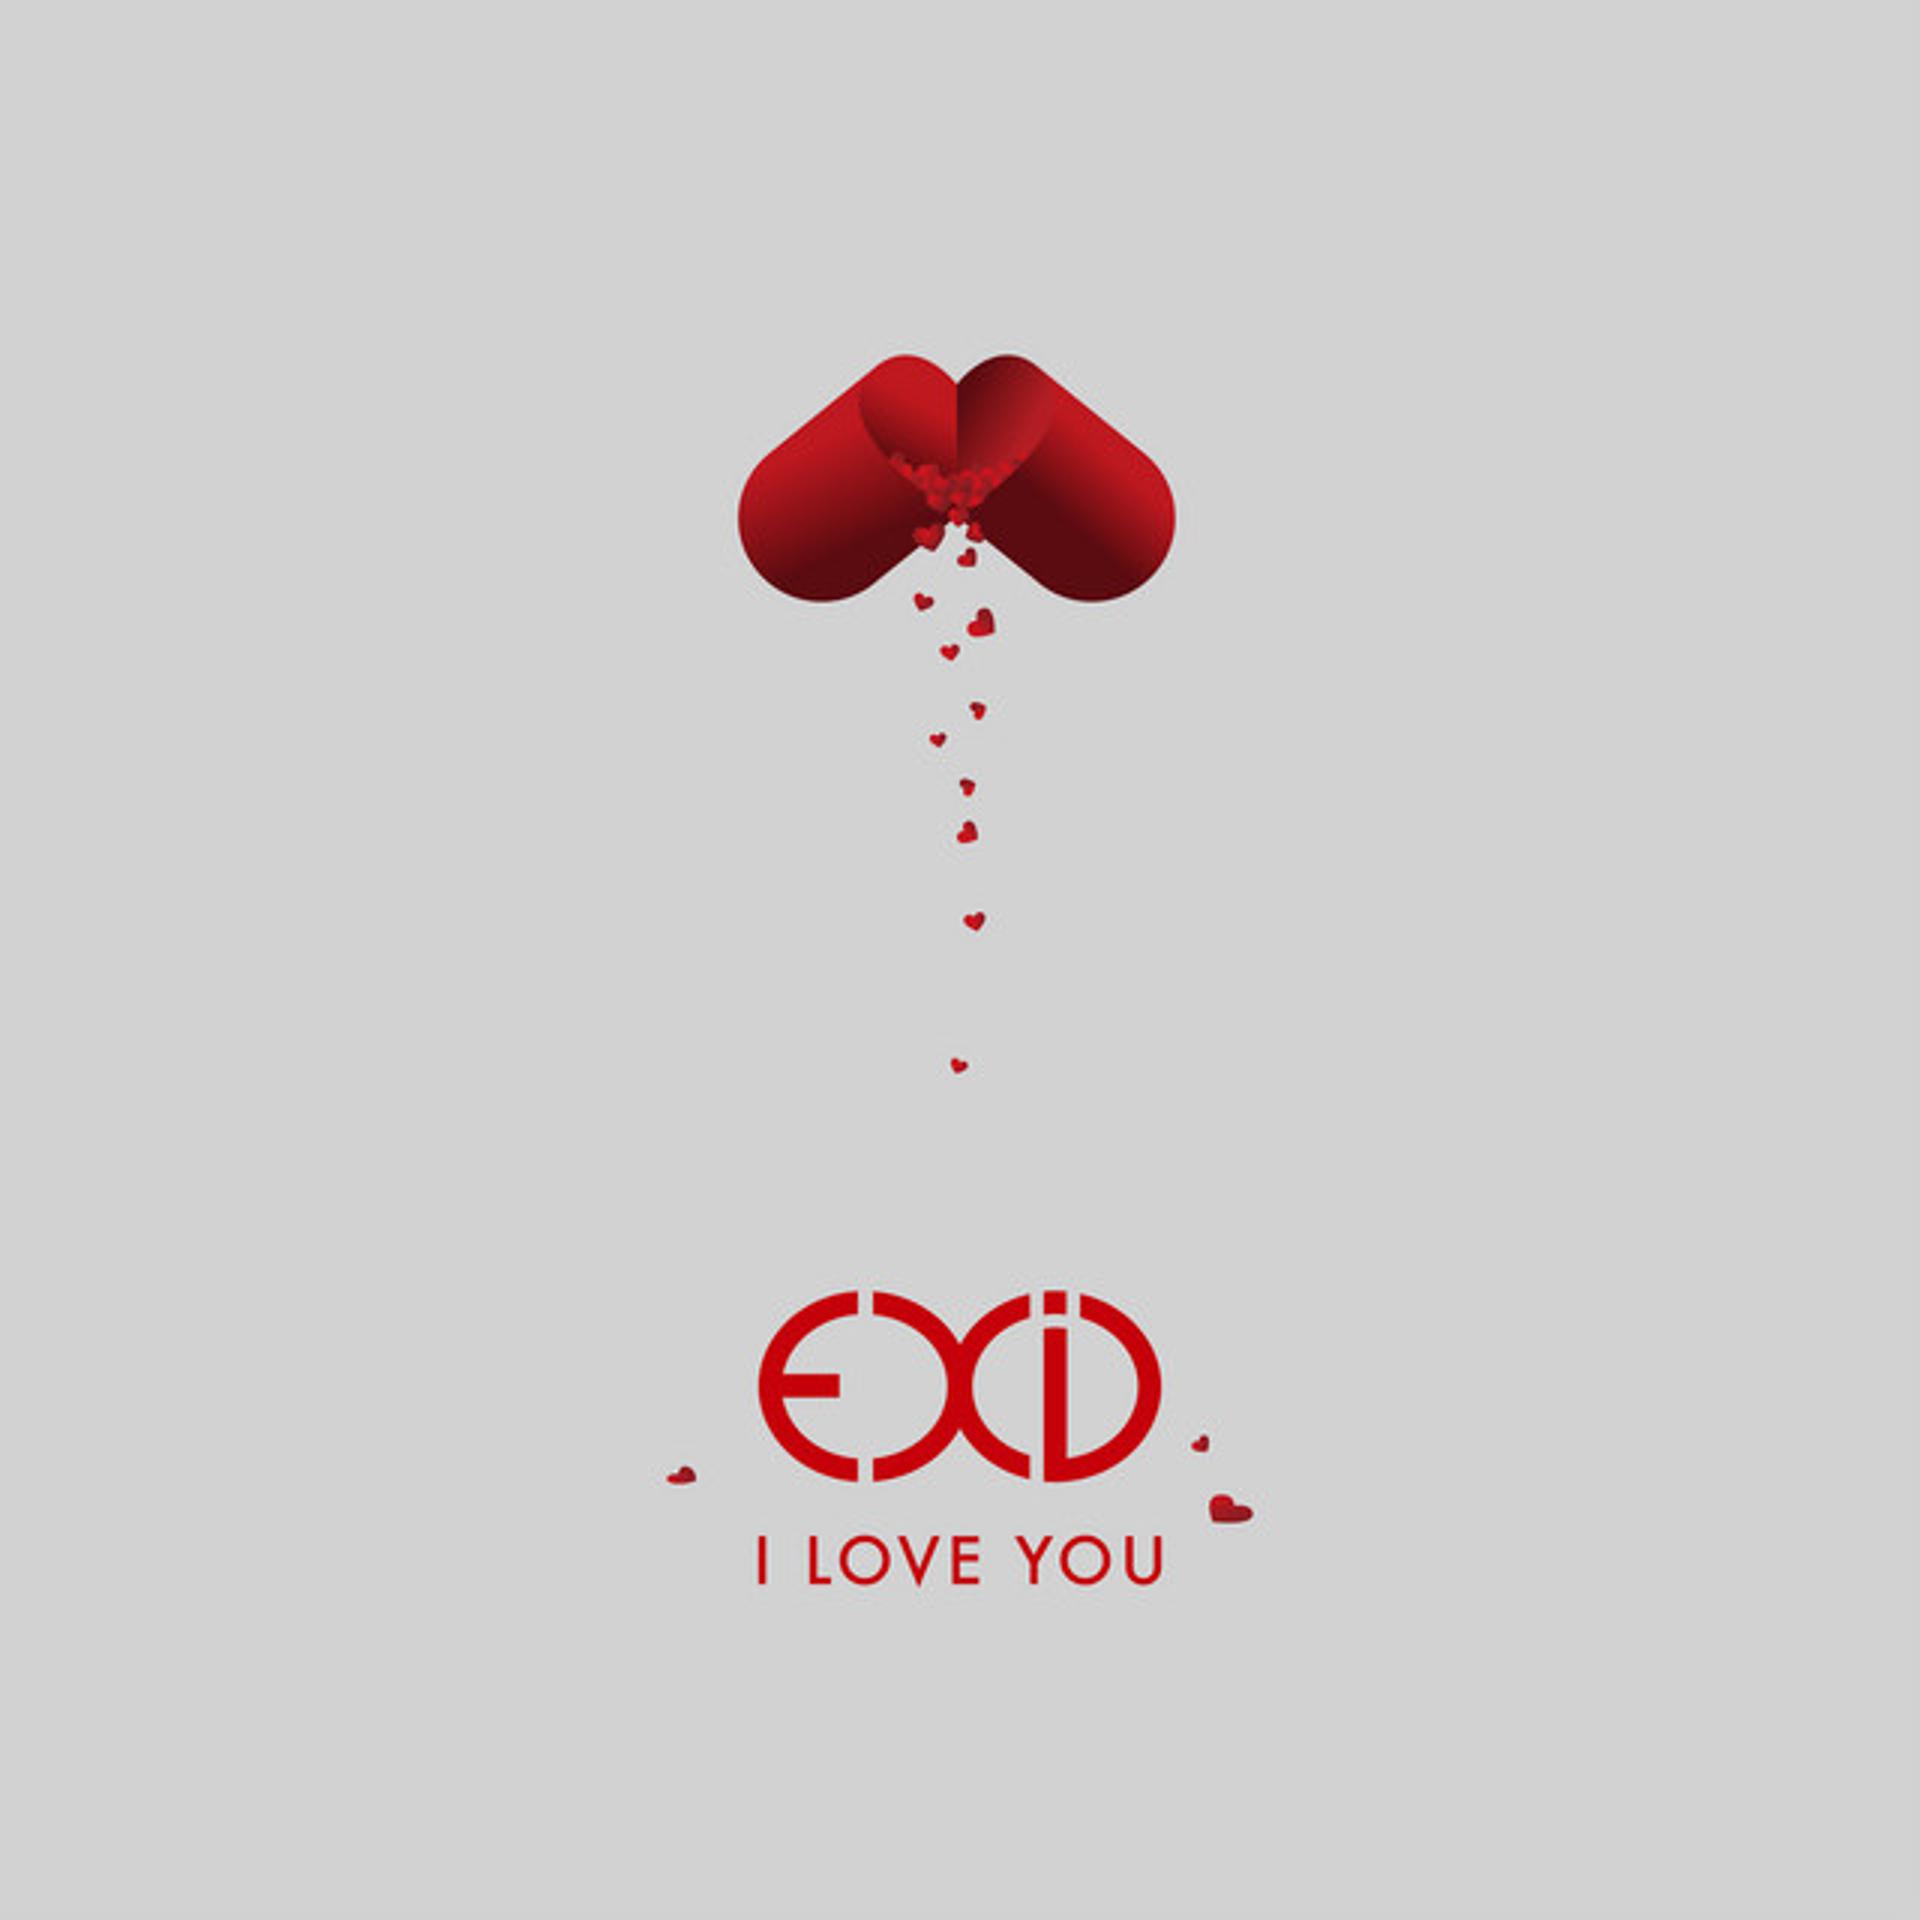 Лов со ю. I Love you. EXID I Love you. EXID iloveyou. I Love обложка.